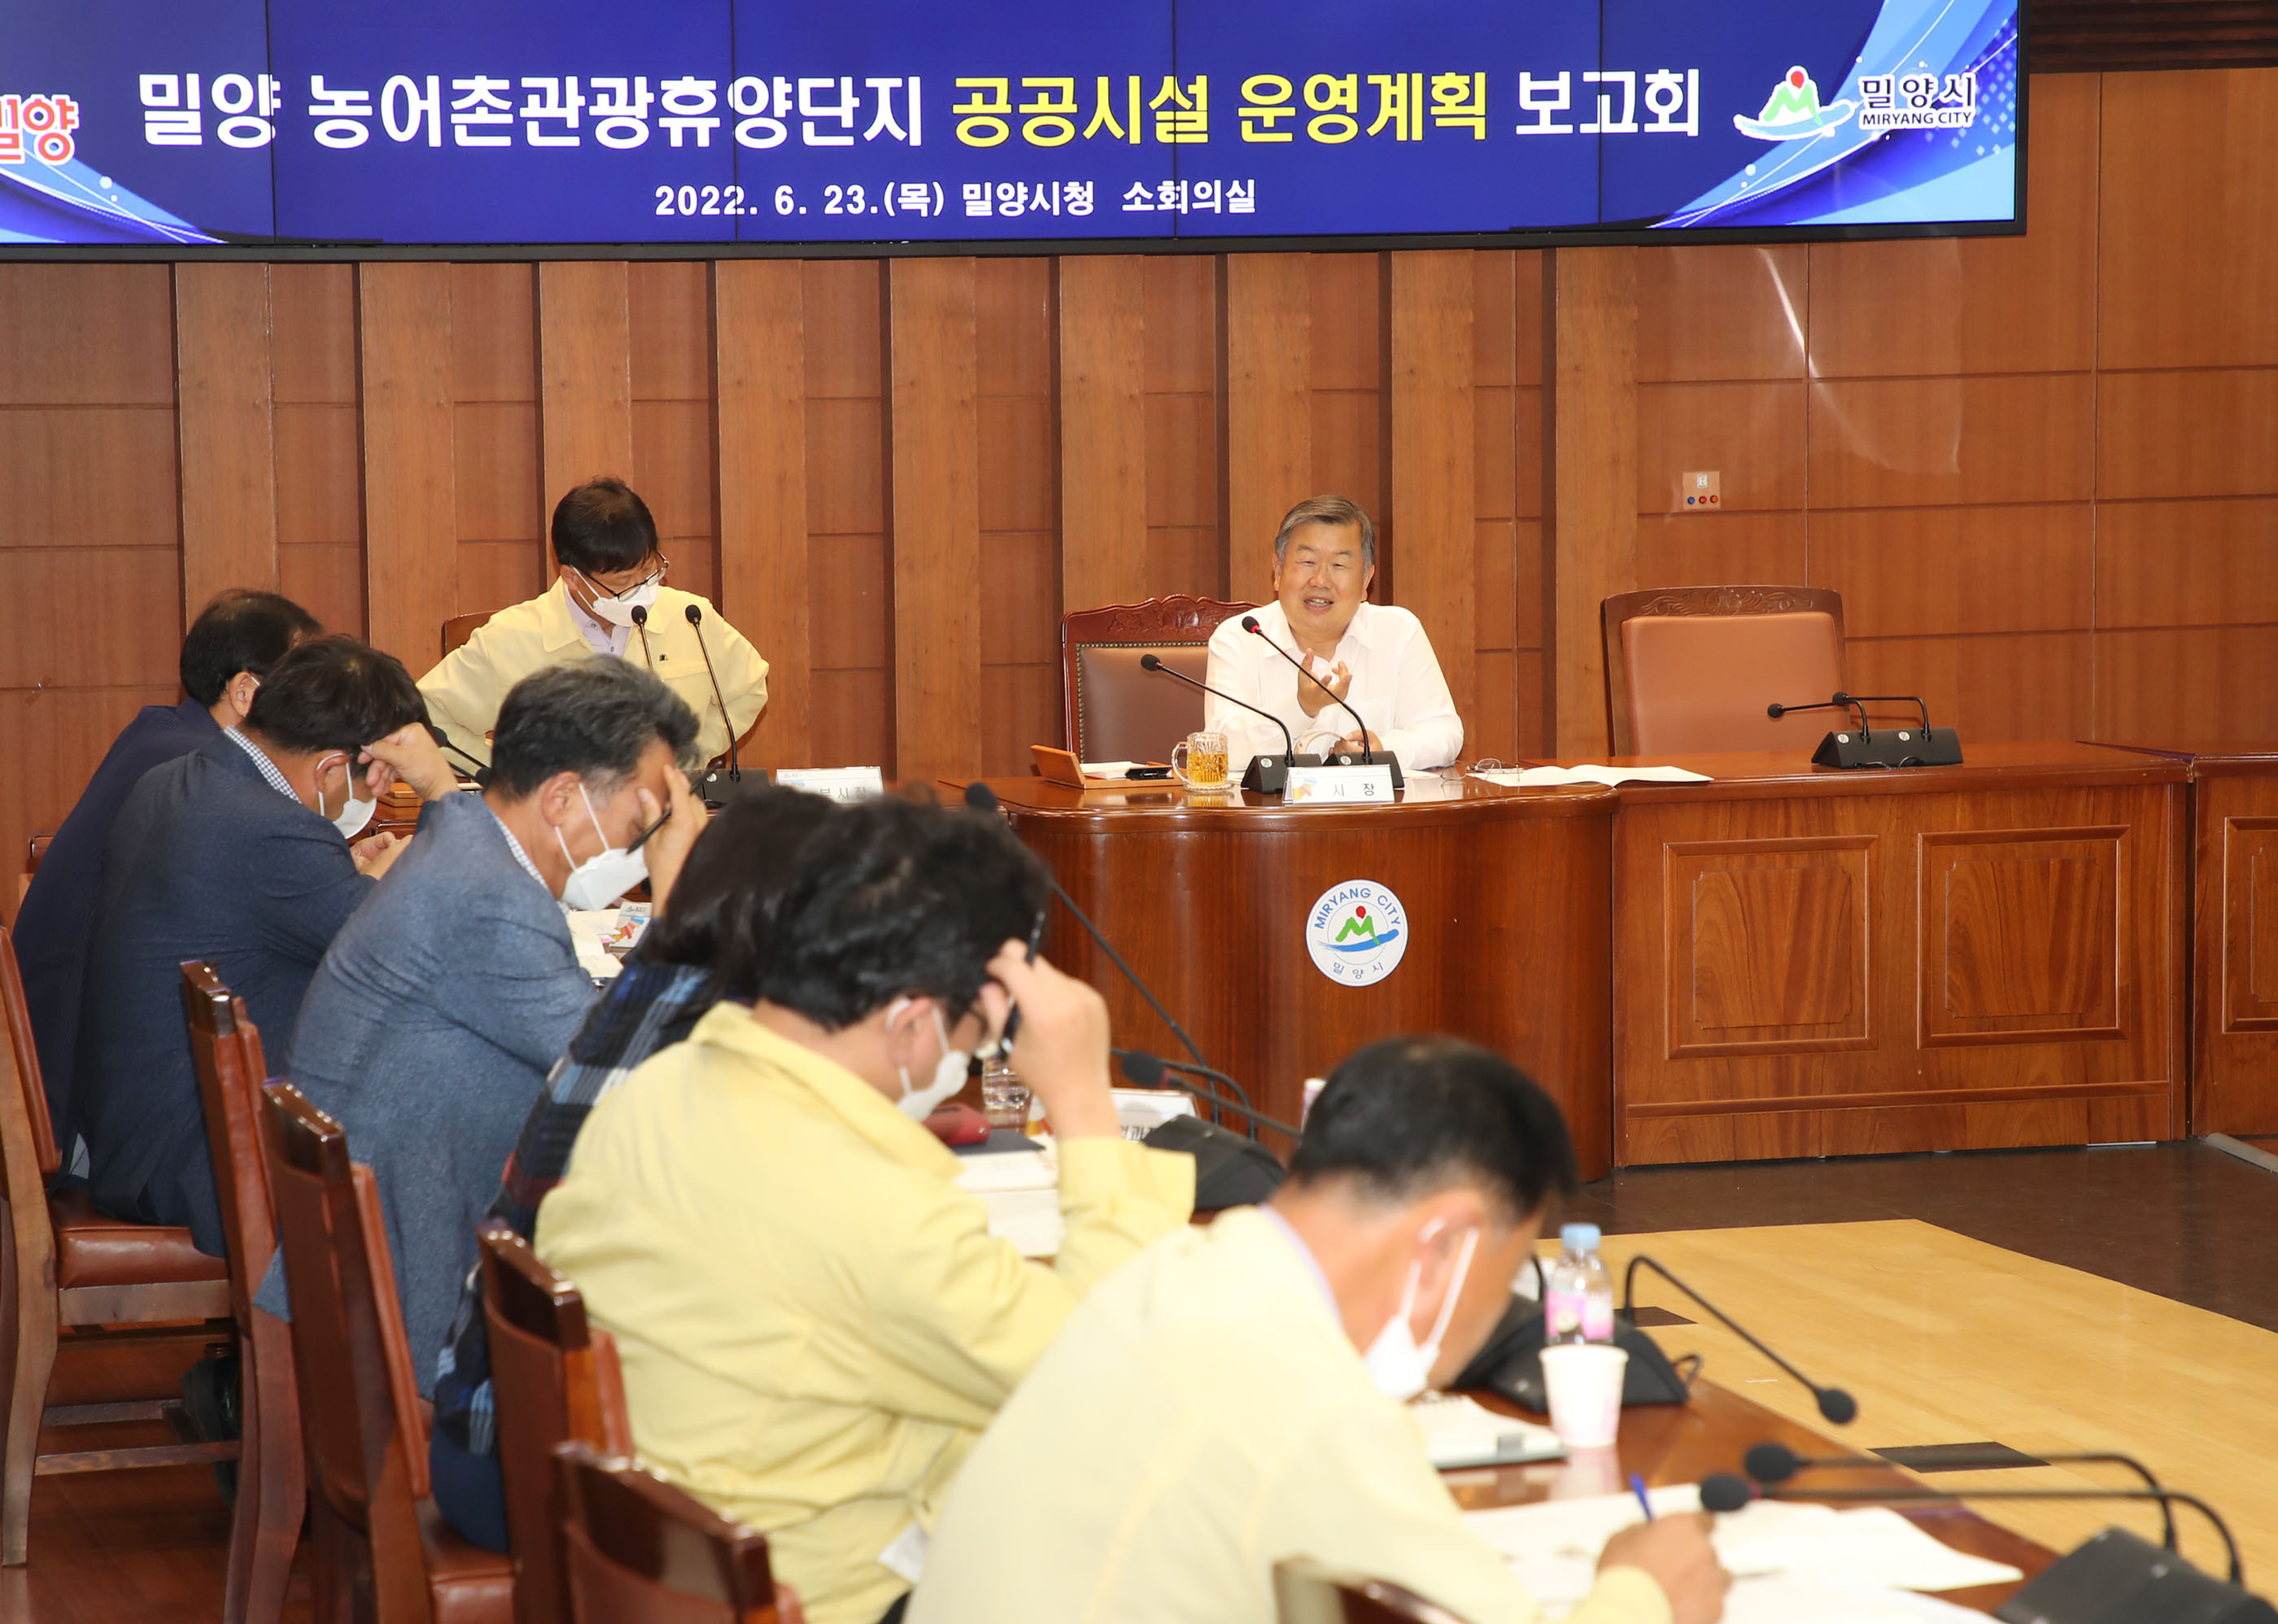 20220623-밀양 농어촌관광휴양단지 공공시설 운영계획 보고회 개최(3).JPG